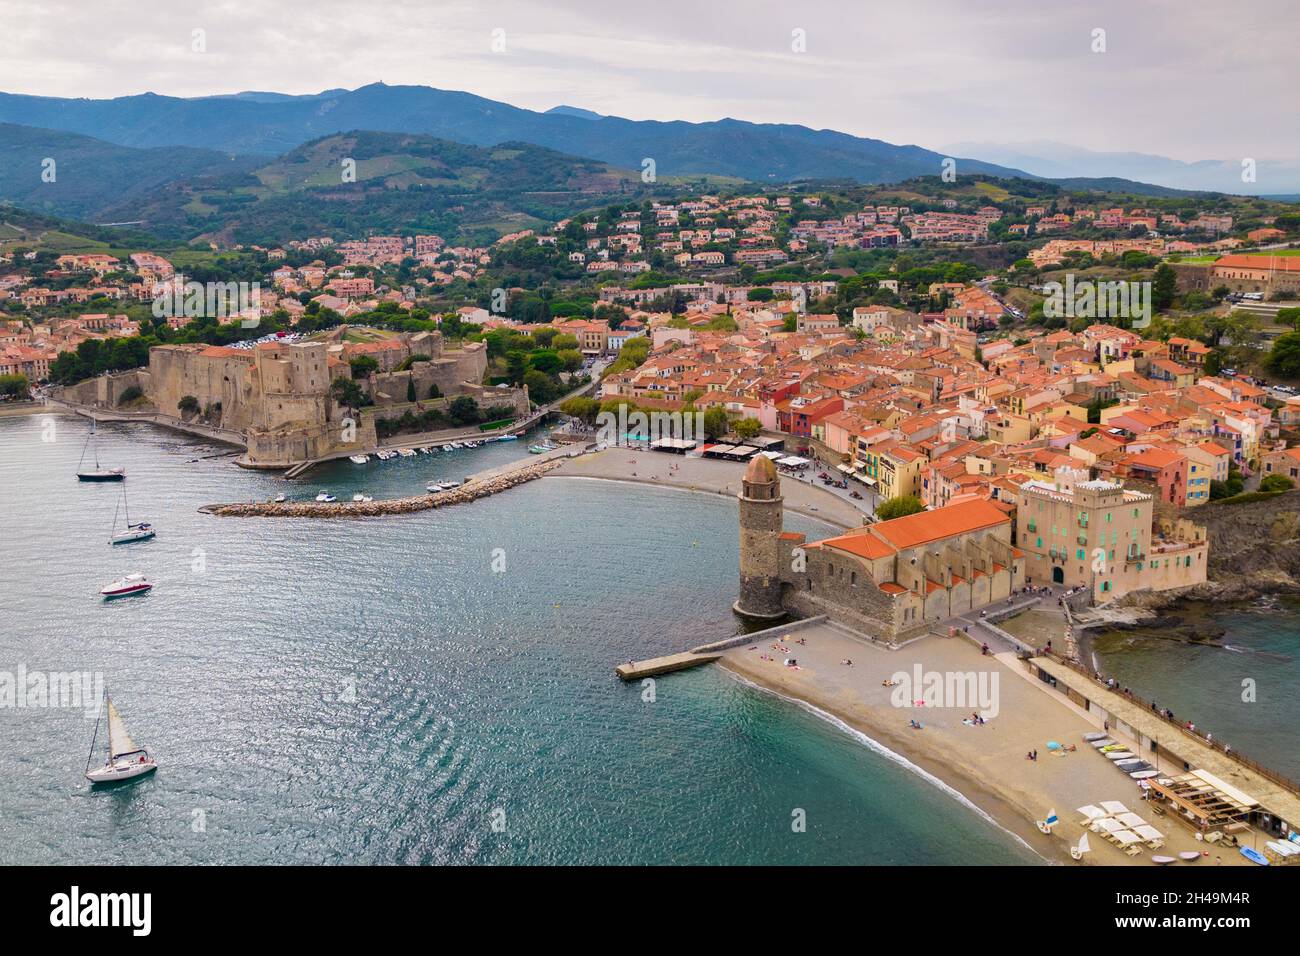 Scatto aereo del vecchio villaggio e porto di Collioure nel Mediterraneo, a sud della Francia Foto Stock